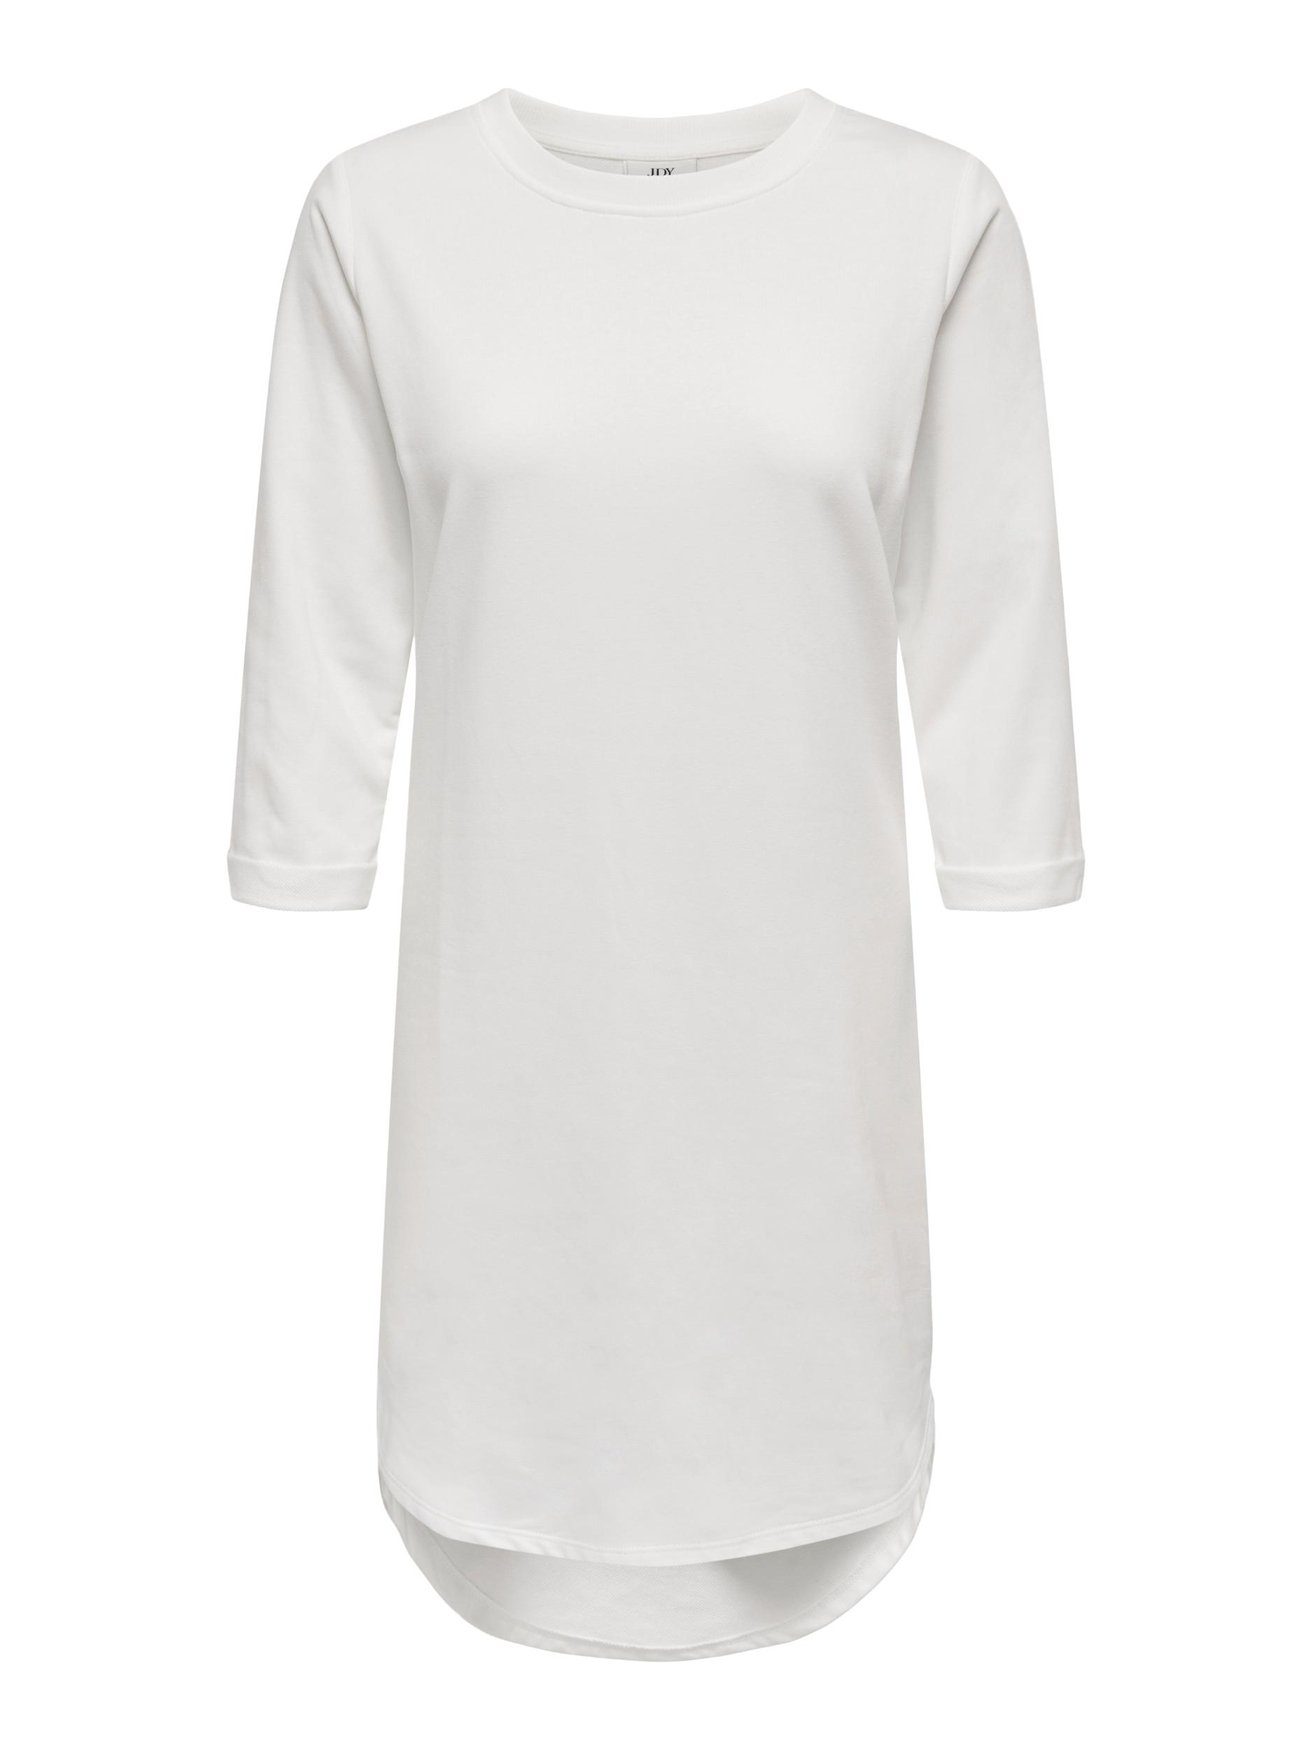 YONG JACQUELINE Weiß-3 Sweat in JDYIVY Arm Shirtkleid (knielang) de Kleid Rundhals 3/4 5608